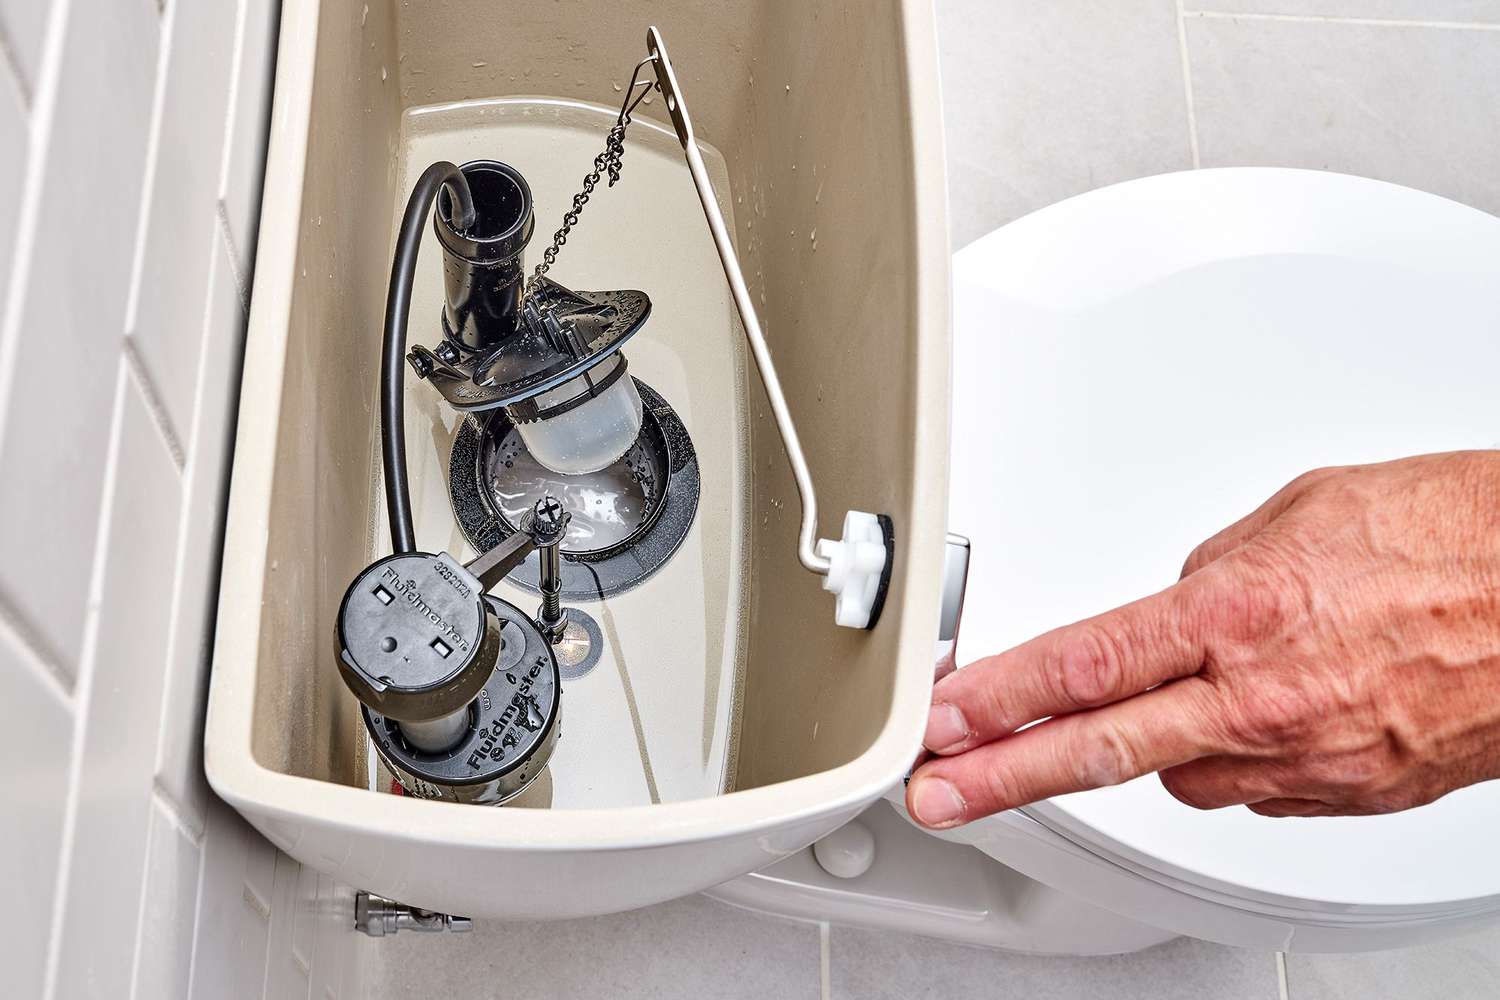 Toilettengriff nach unten gedrückt, um die Wasserspülung zu überprüfen